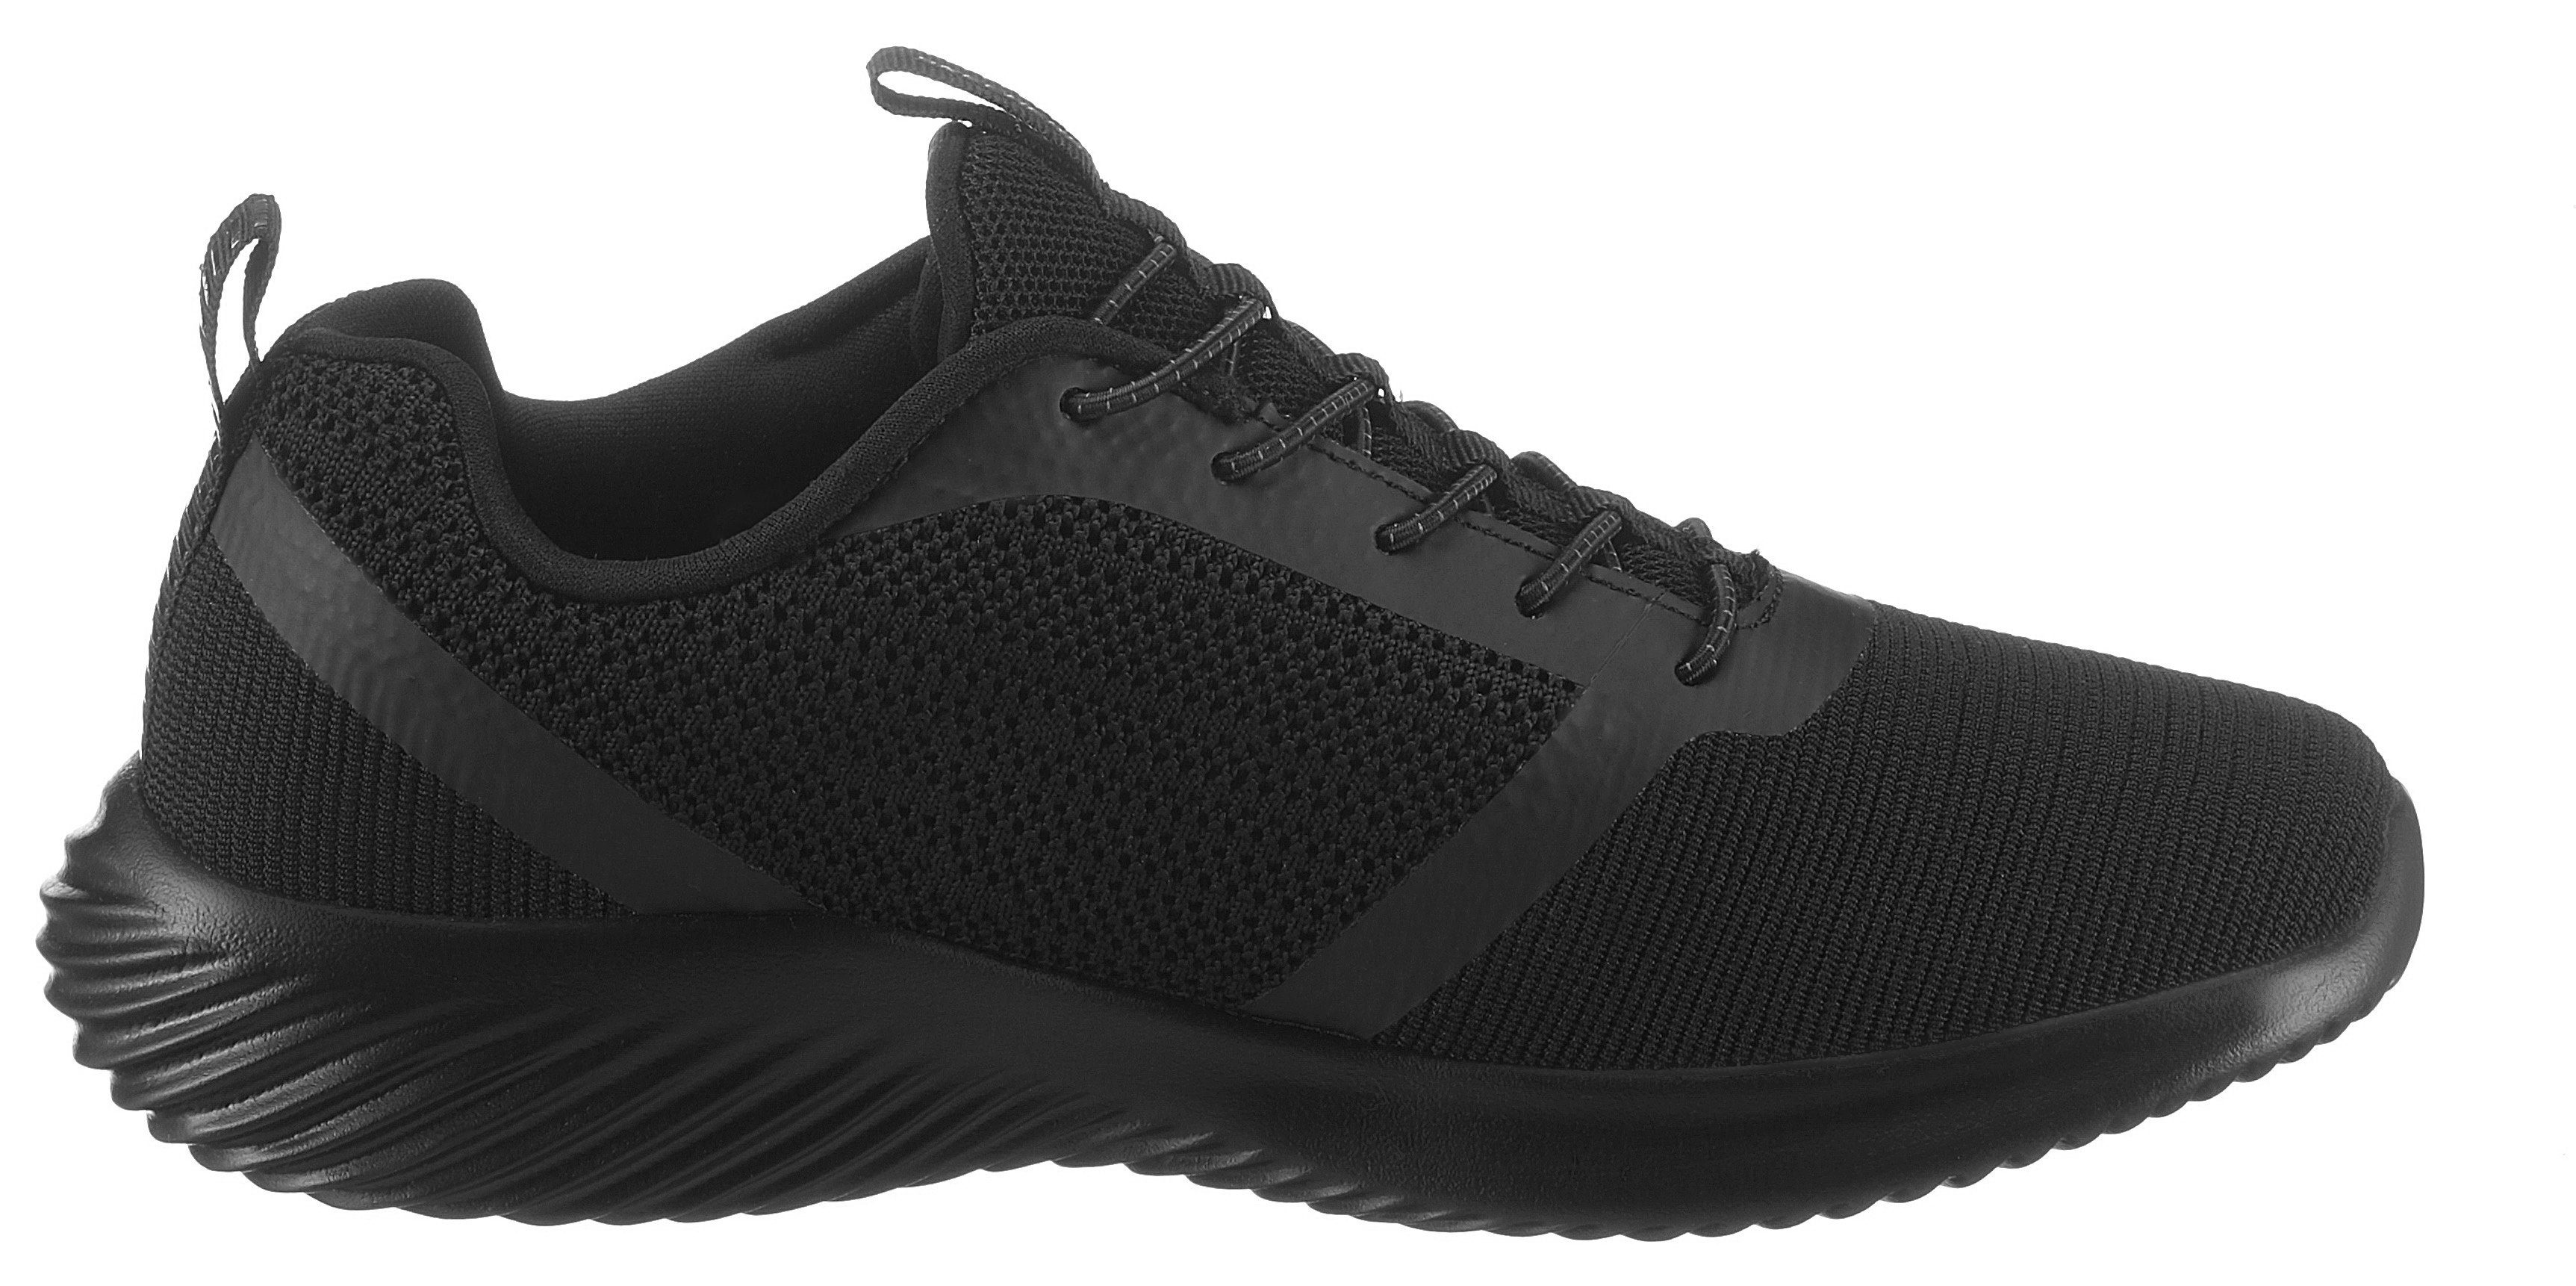 schwarz leichter BOUNDER Skechers mit Slip-On Laufsohle Sneaker